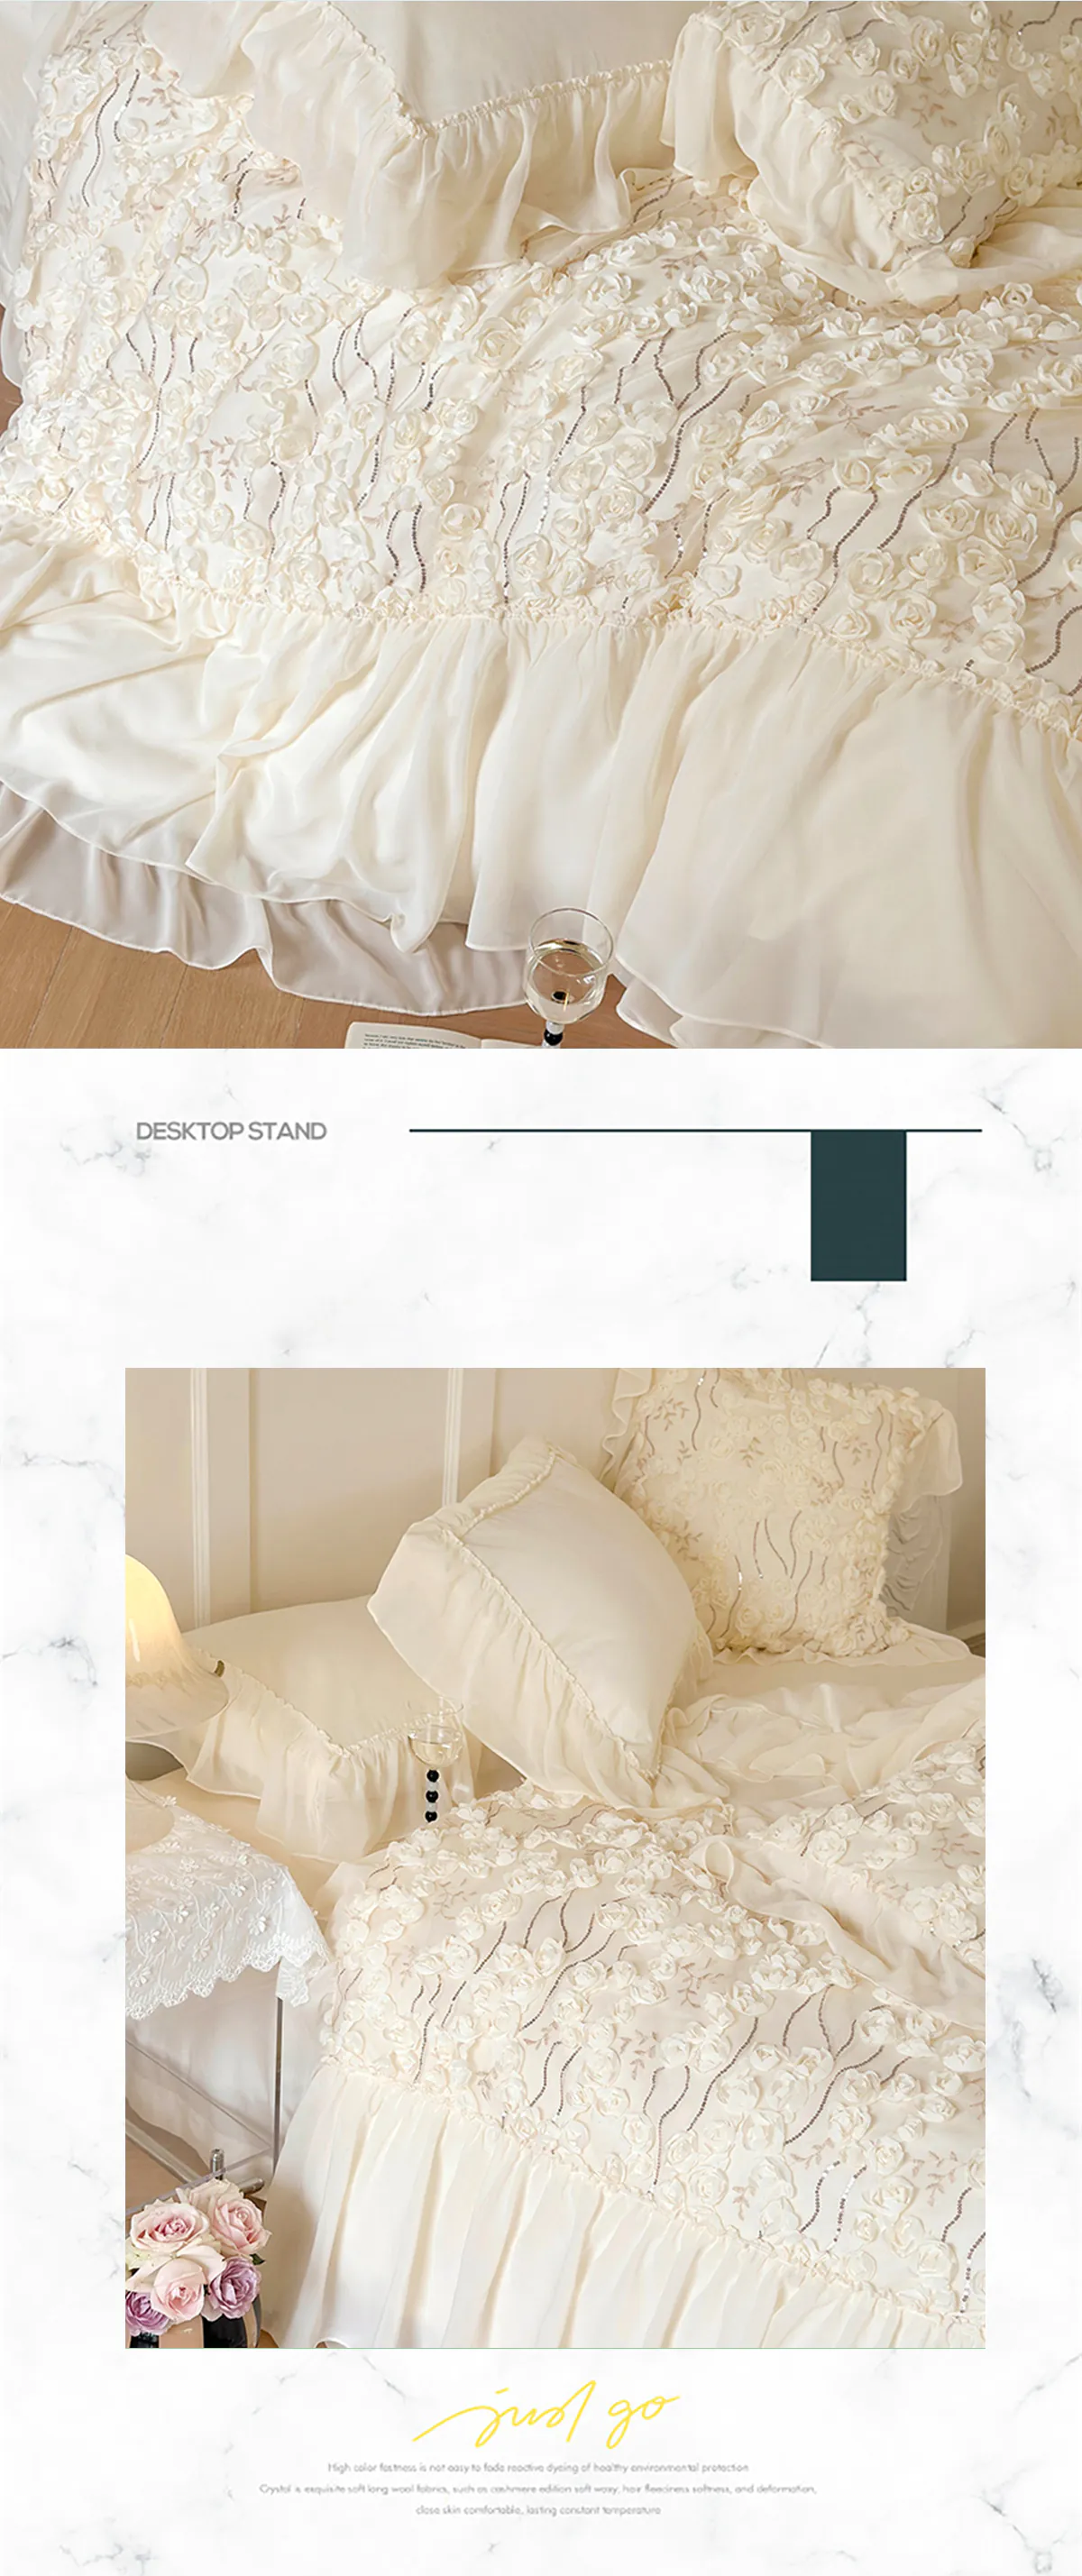 Aesthetic-140S-Long-Staple-Cotton-Chiffon-Lace-Floral-Bedding-Set13